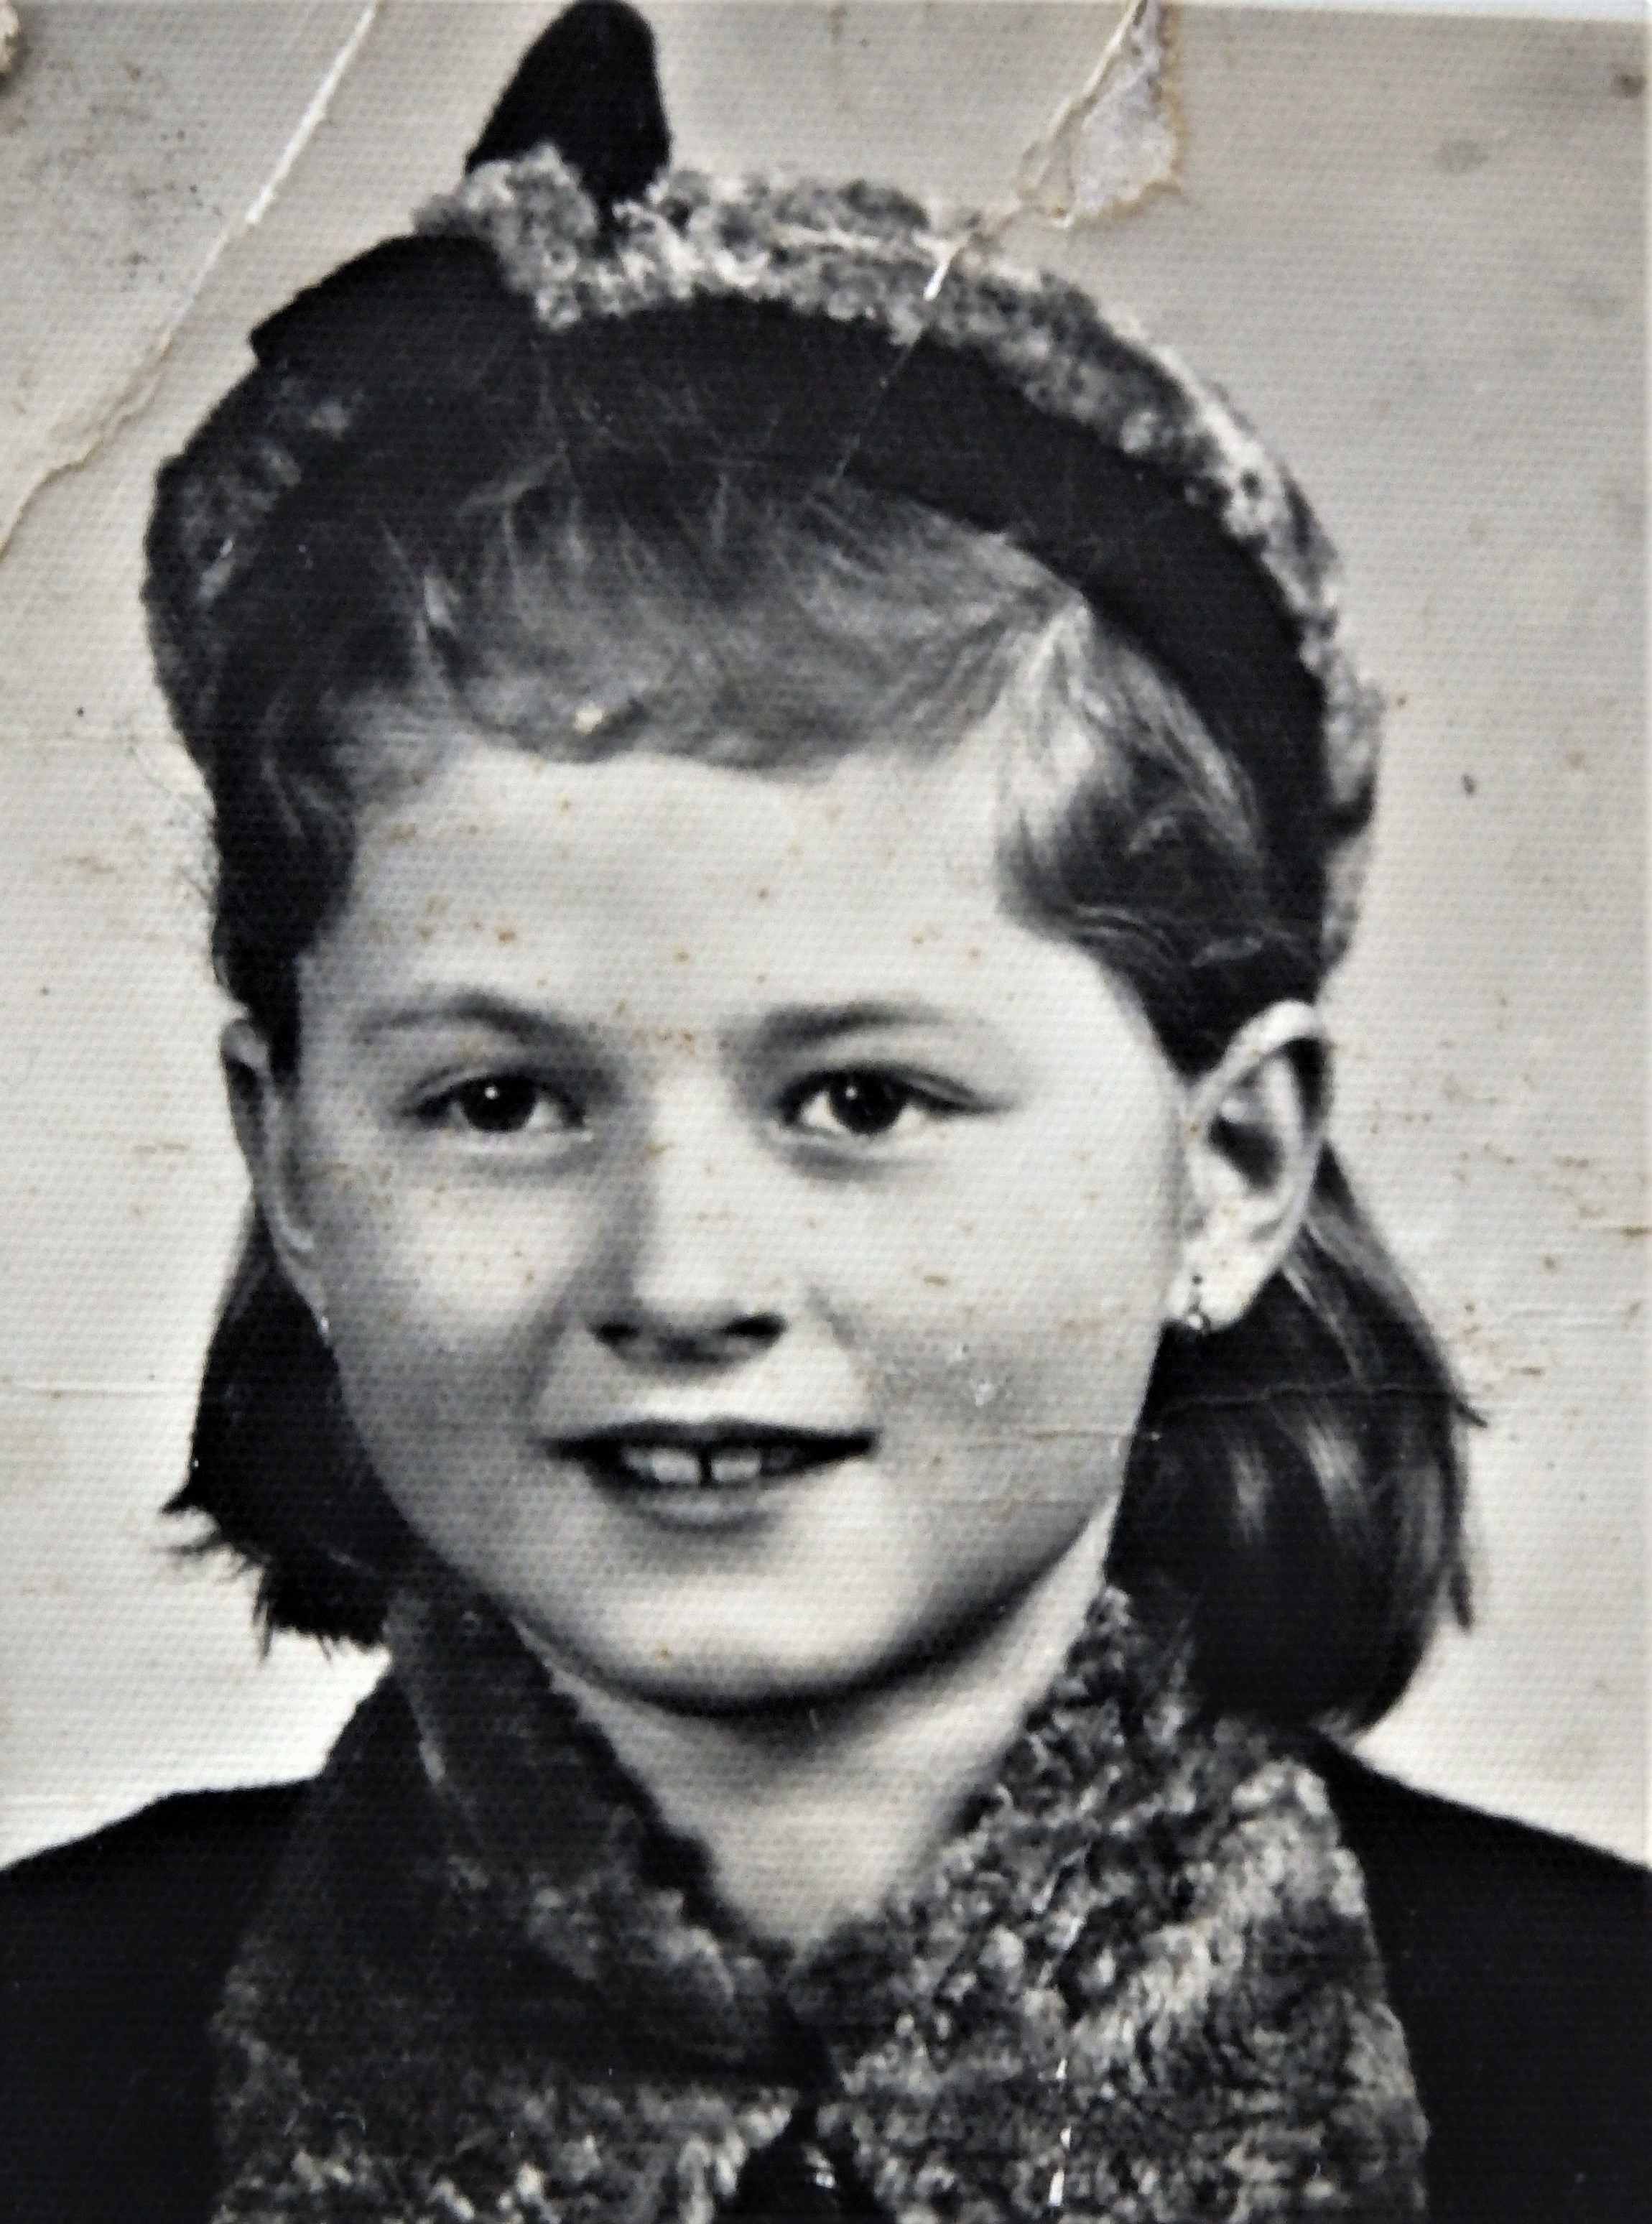 Marie Kovářová in 1944